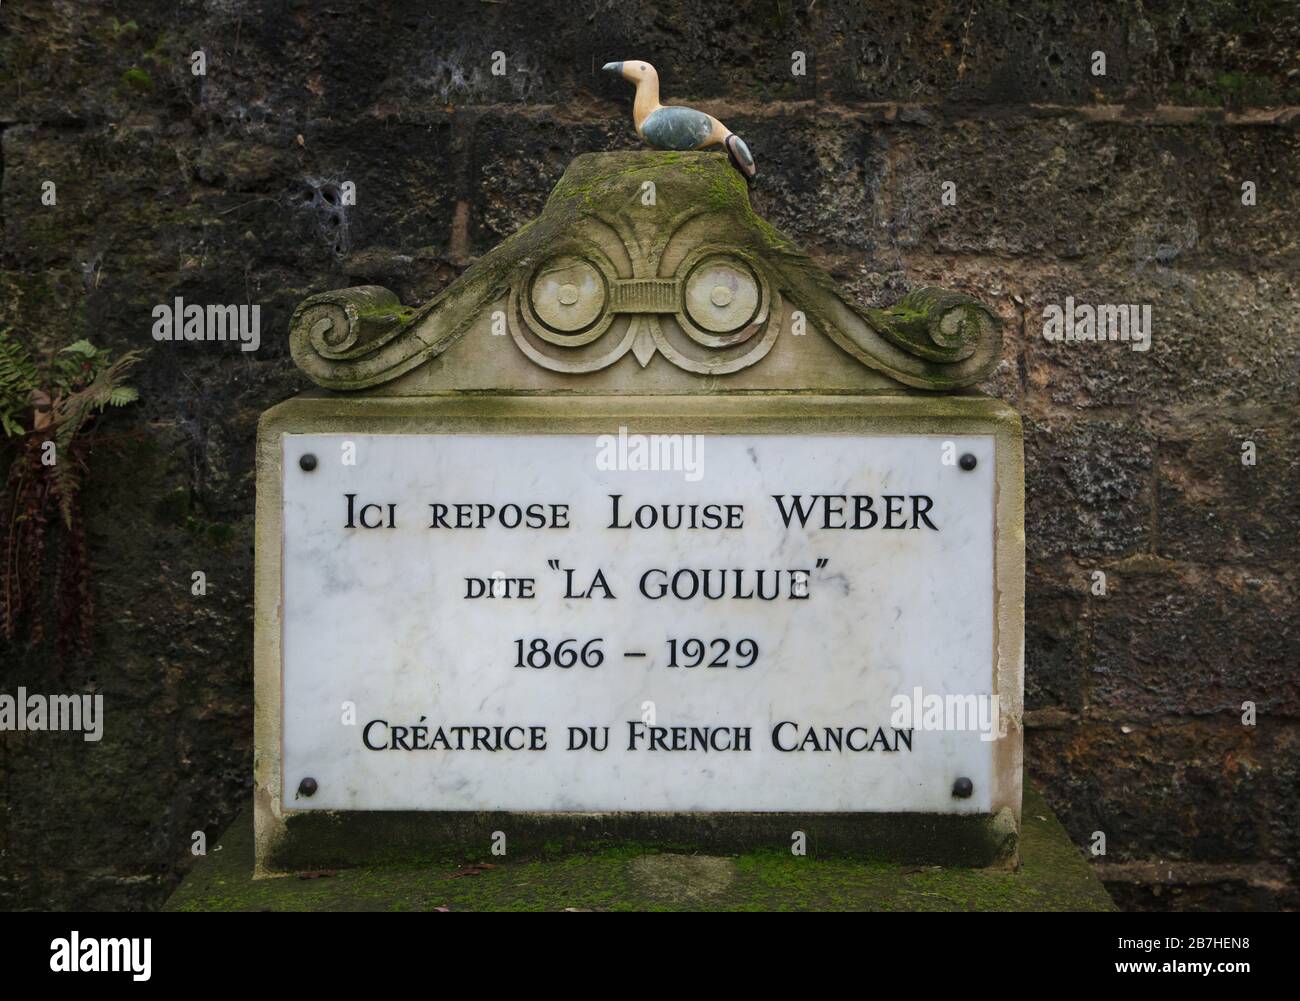 Grab der französischen Cancan-Tänzerin Louise Weber, besser bekannt als La Goulue (1865-1929) auf dem Montmartre Friedhof (Cimetière de Montmartre) in Paris, Frankreich. La Goulue wurde als Königin von Montmartre und als Schöpfer des französischen Cancan gefeiert. Stockfoto